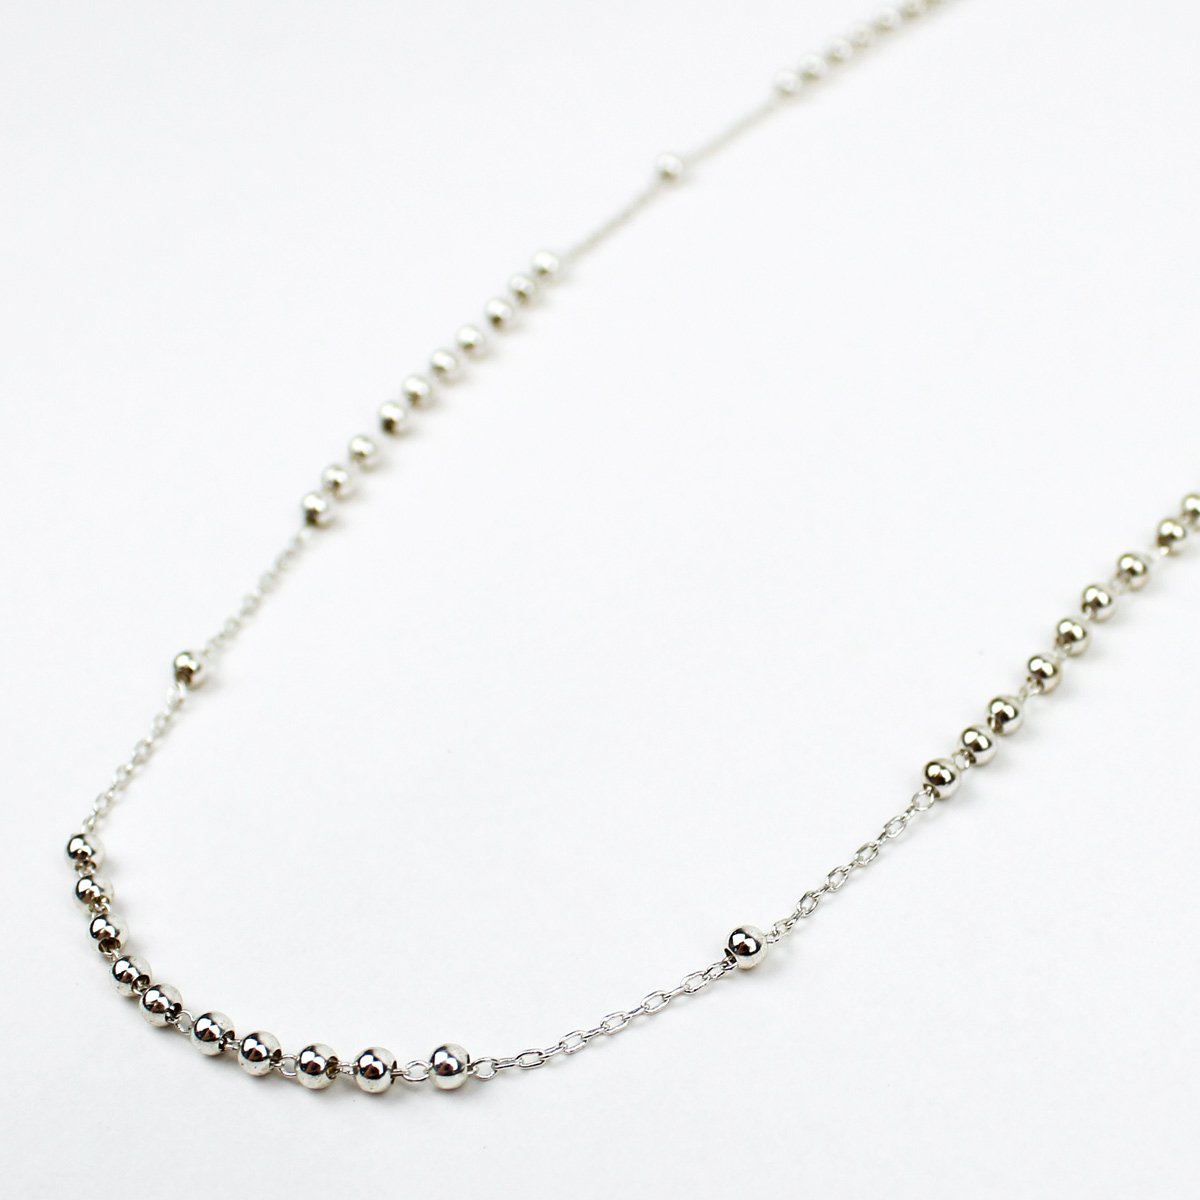 MSMH - Rosary Bead Necklace